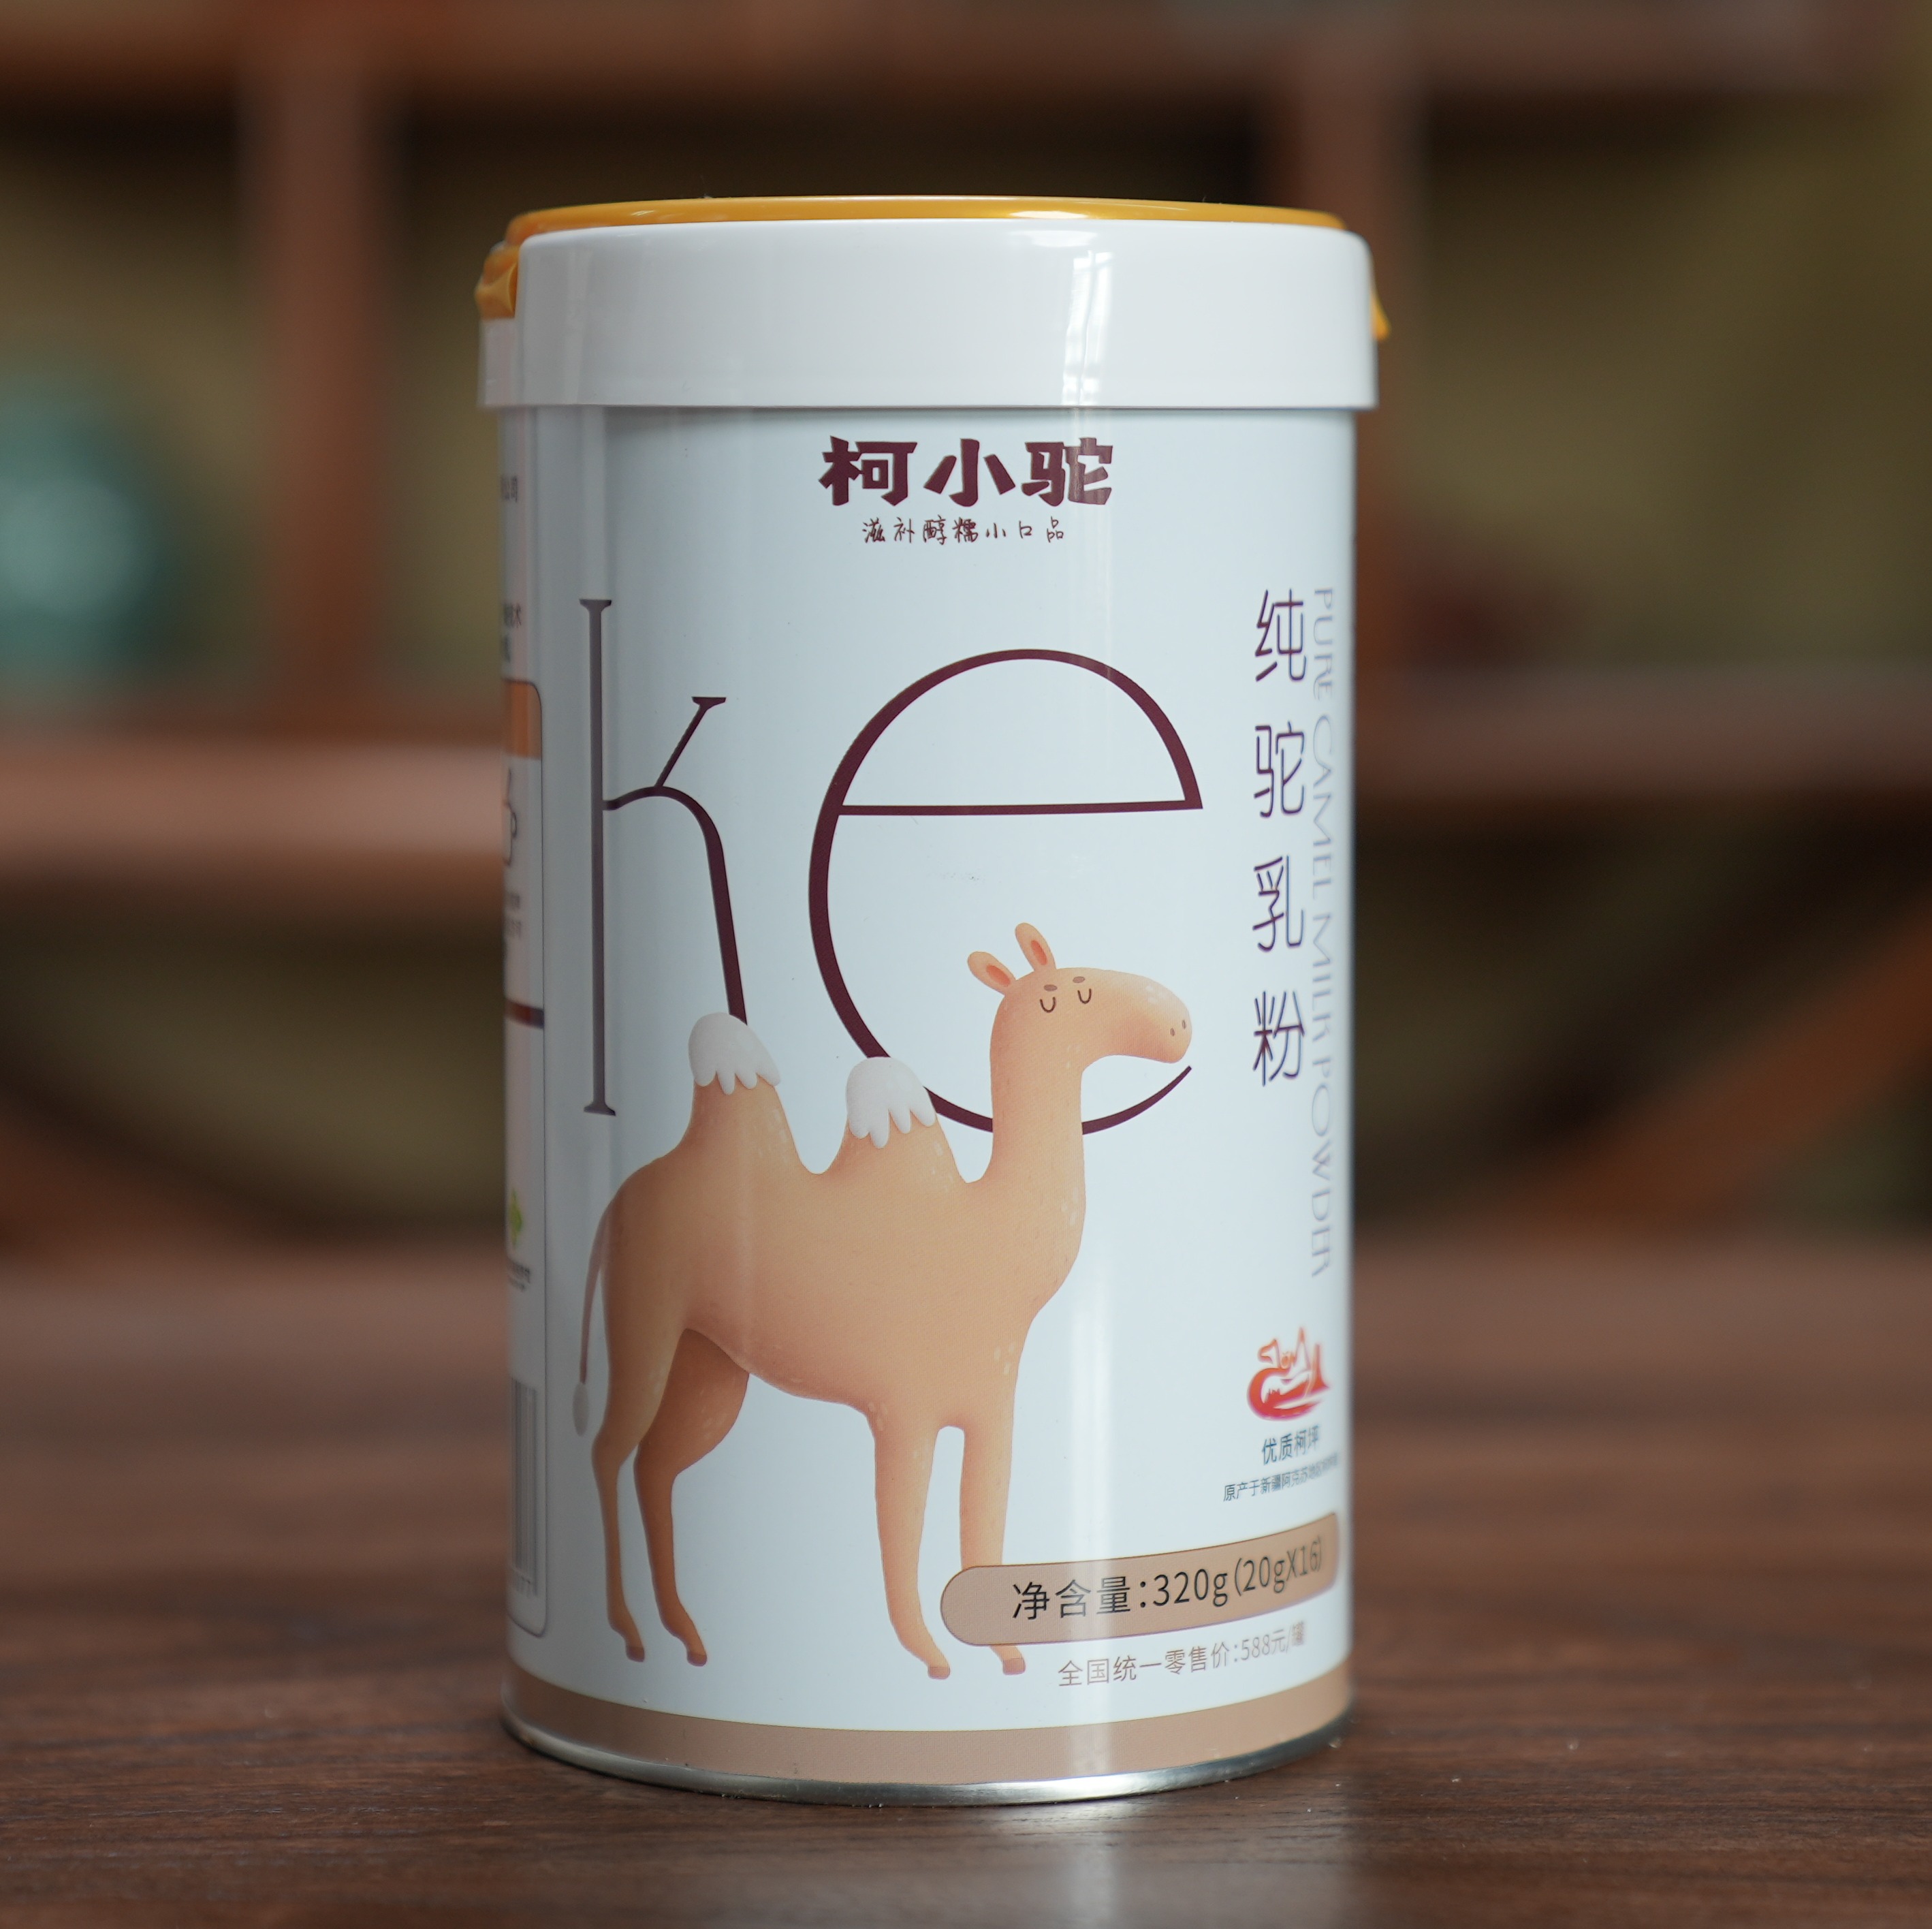 柯小驼驼奶粉 援疆助农 地道的新疆优品质驼奶